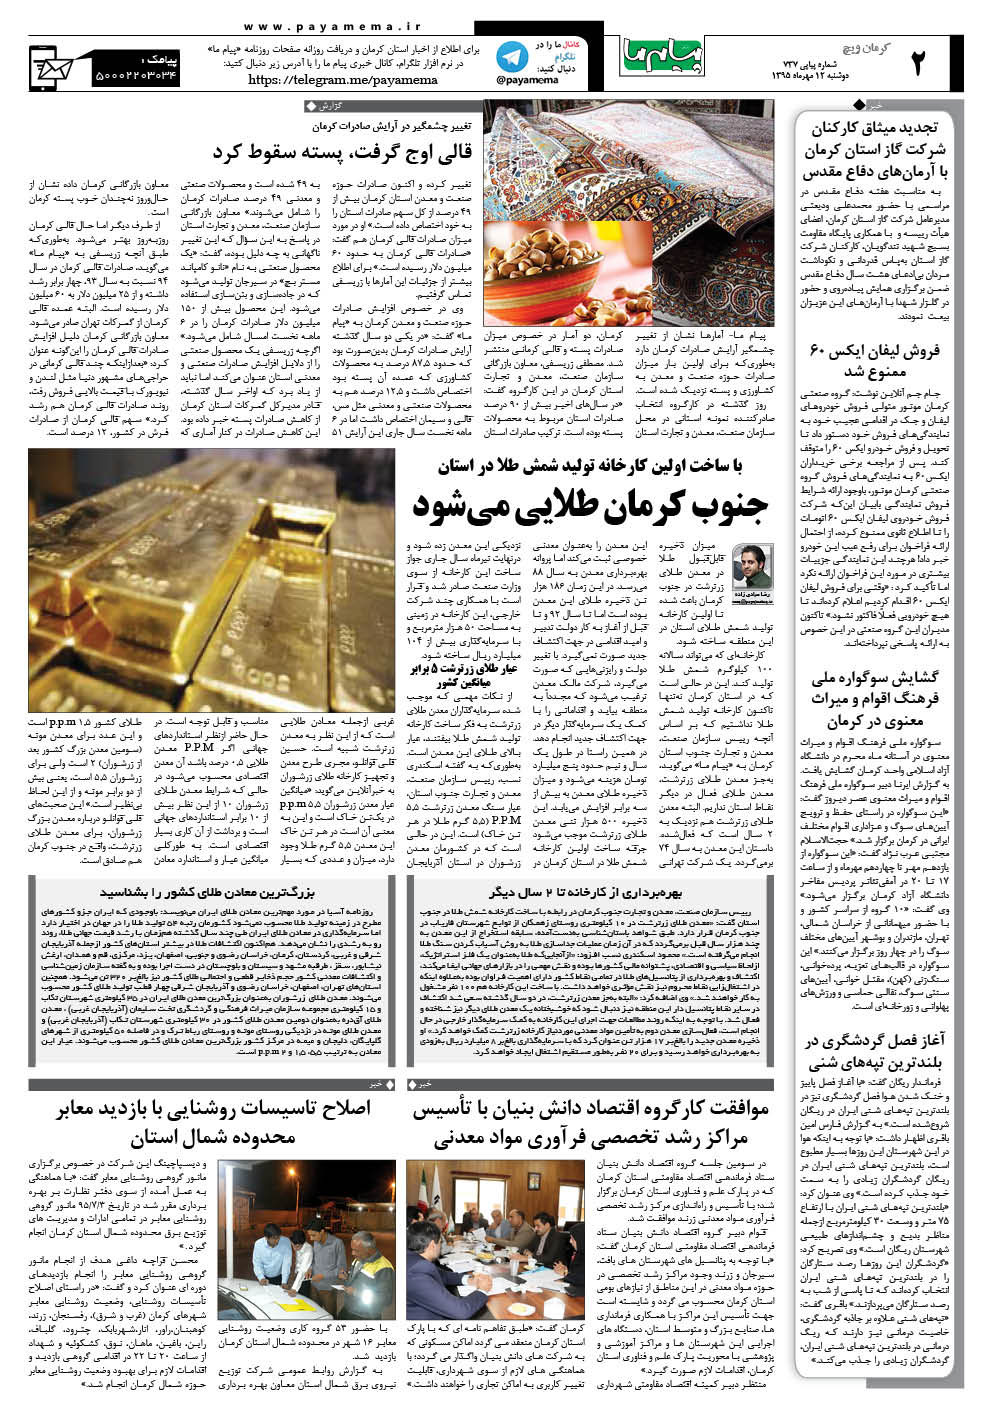 صفحه کرمان ویچ شماره 737 روزنامه پیام ما